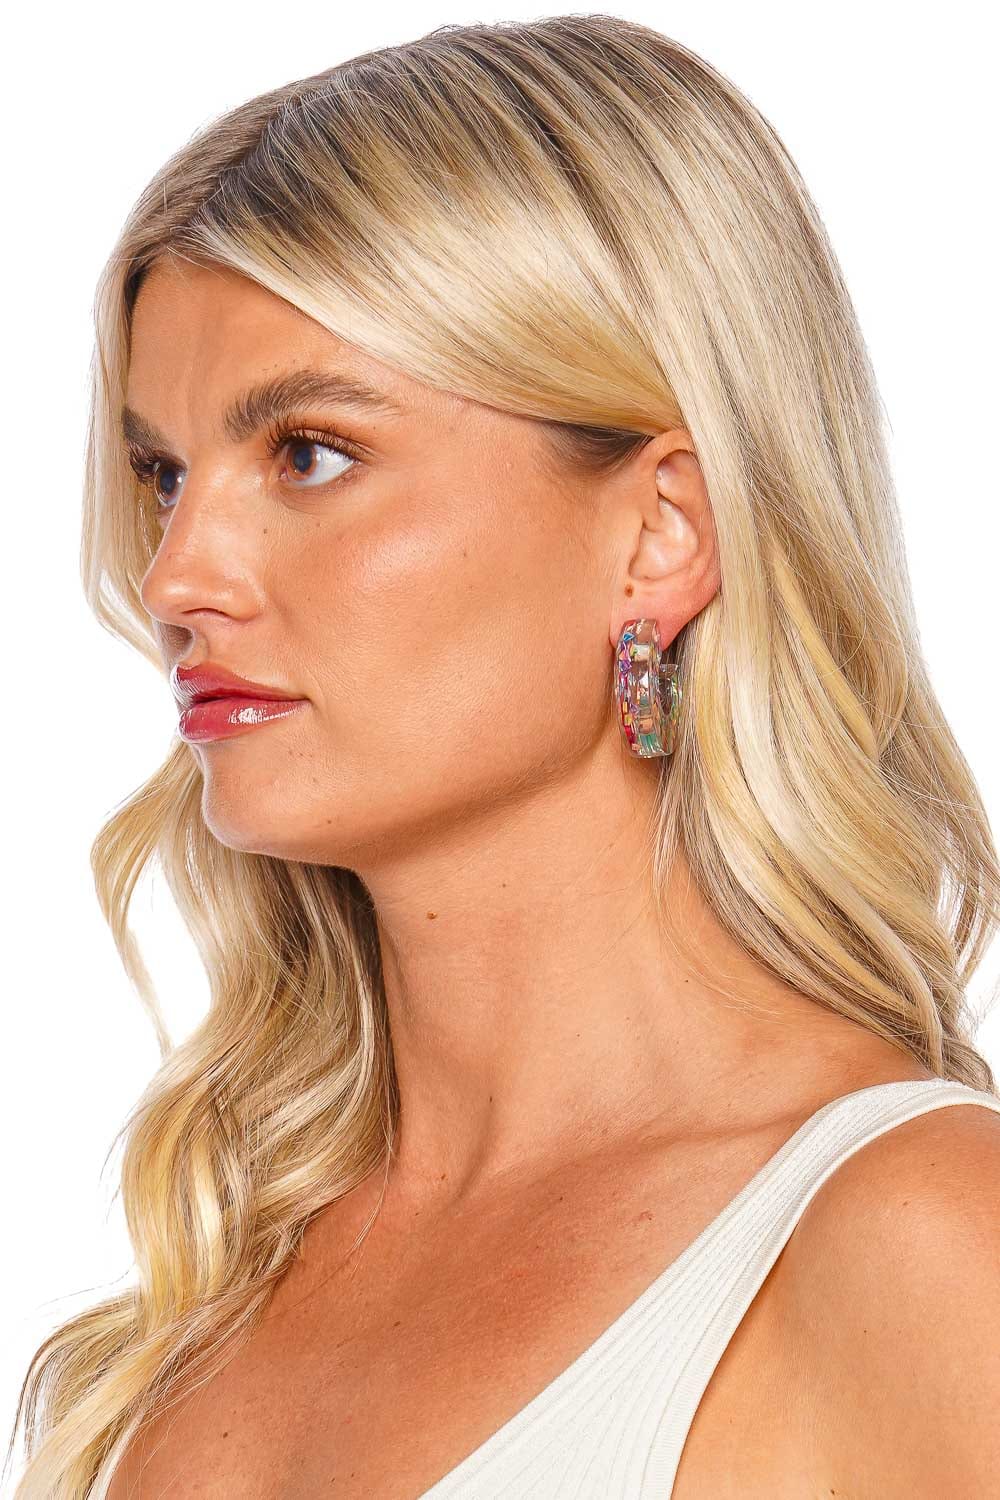 Crystal Haze Jewelry Confetti Multicolored Hoop Earrings